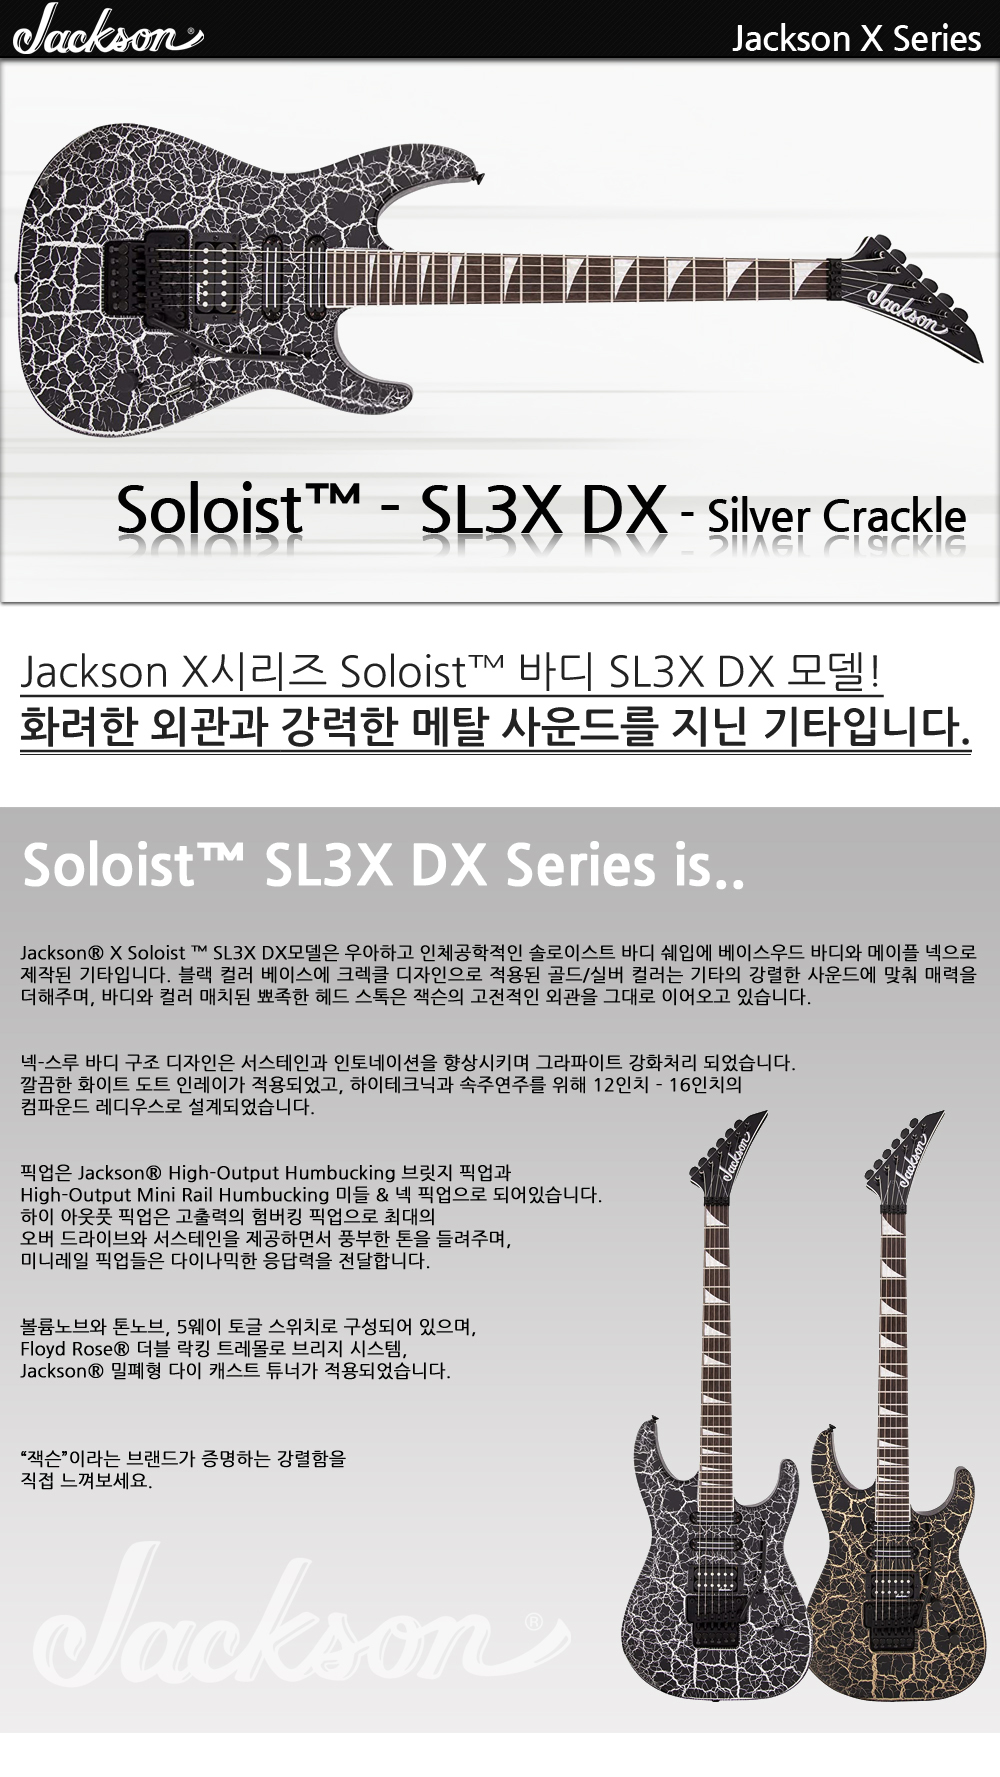 Jackson-X-Soloist-SL3XDX-SilverCrackle_1_145833.jpg